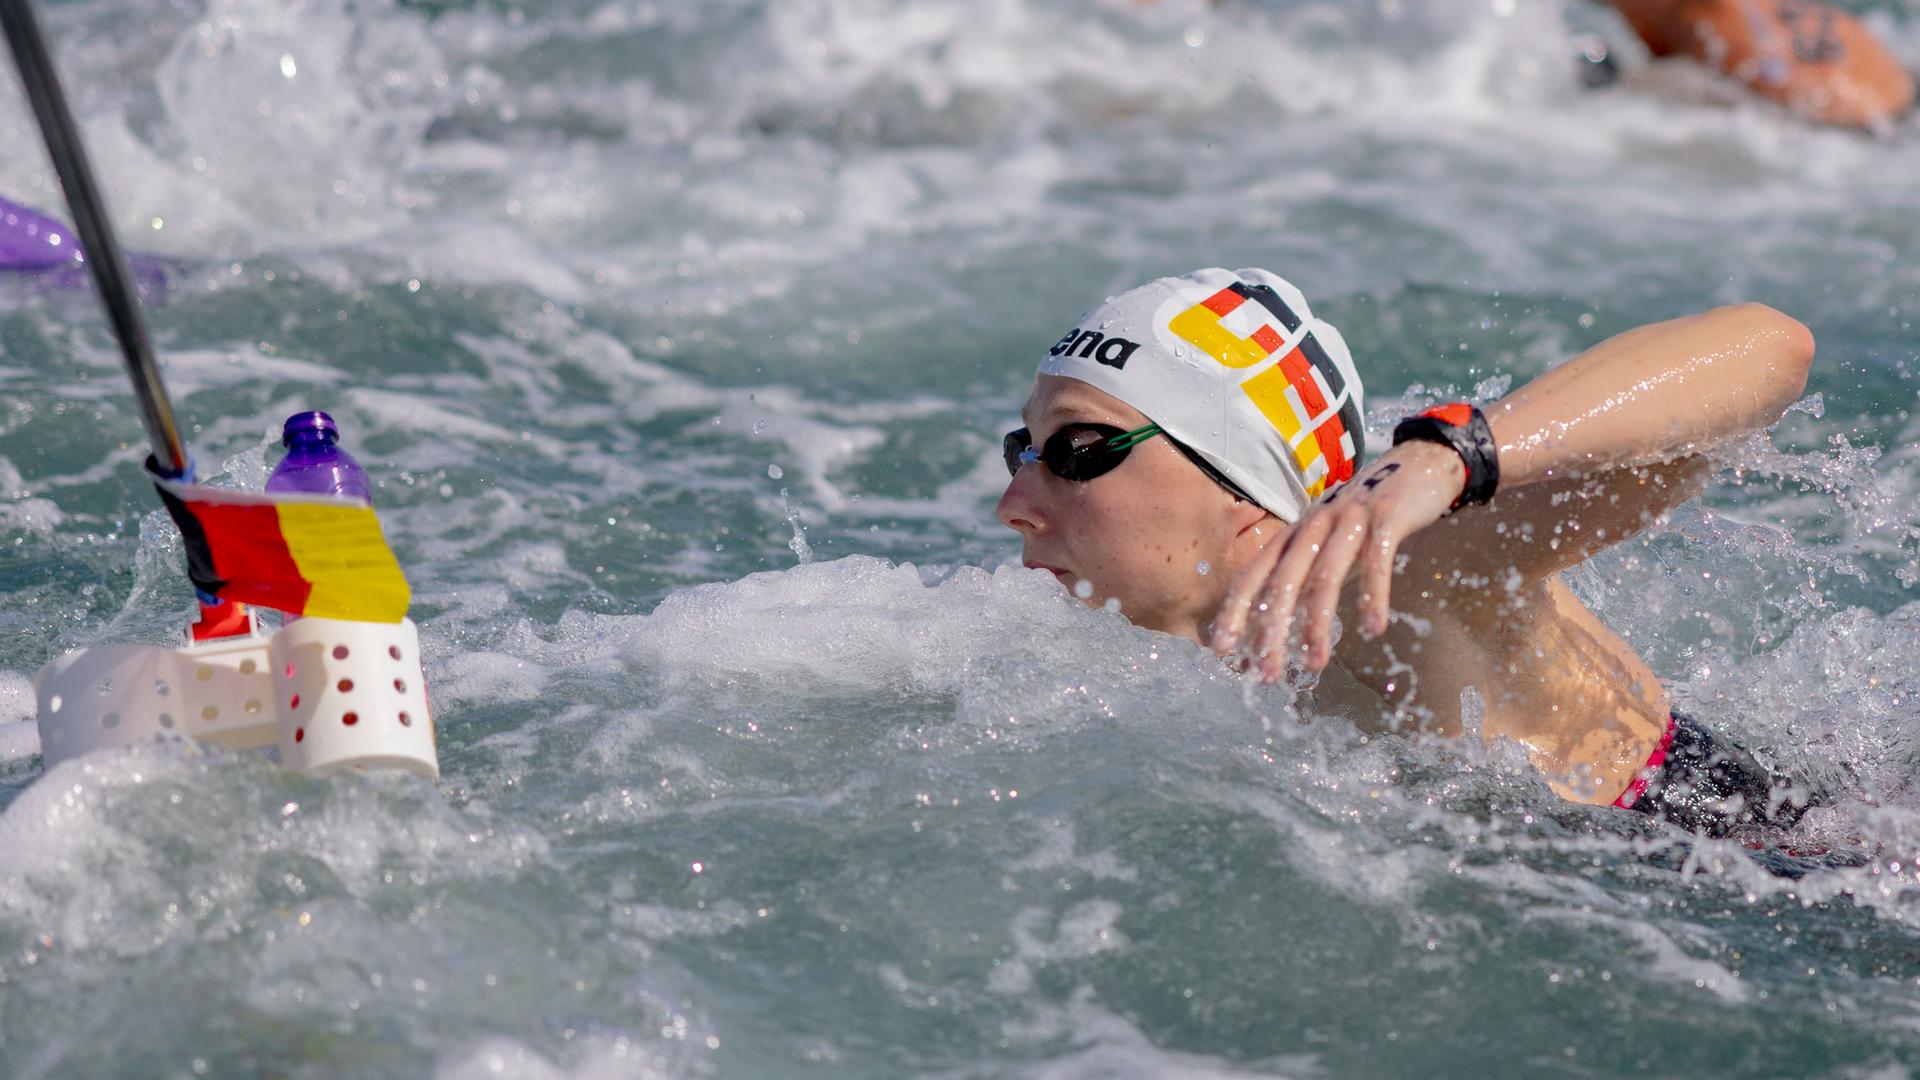 Katar, Doha: Schwimmen: Weltmeisterschaft, Freiwasser - 10 km, Frauen: Leonie Beck aus Deutschland in Aktion.